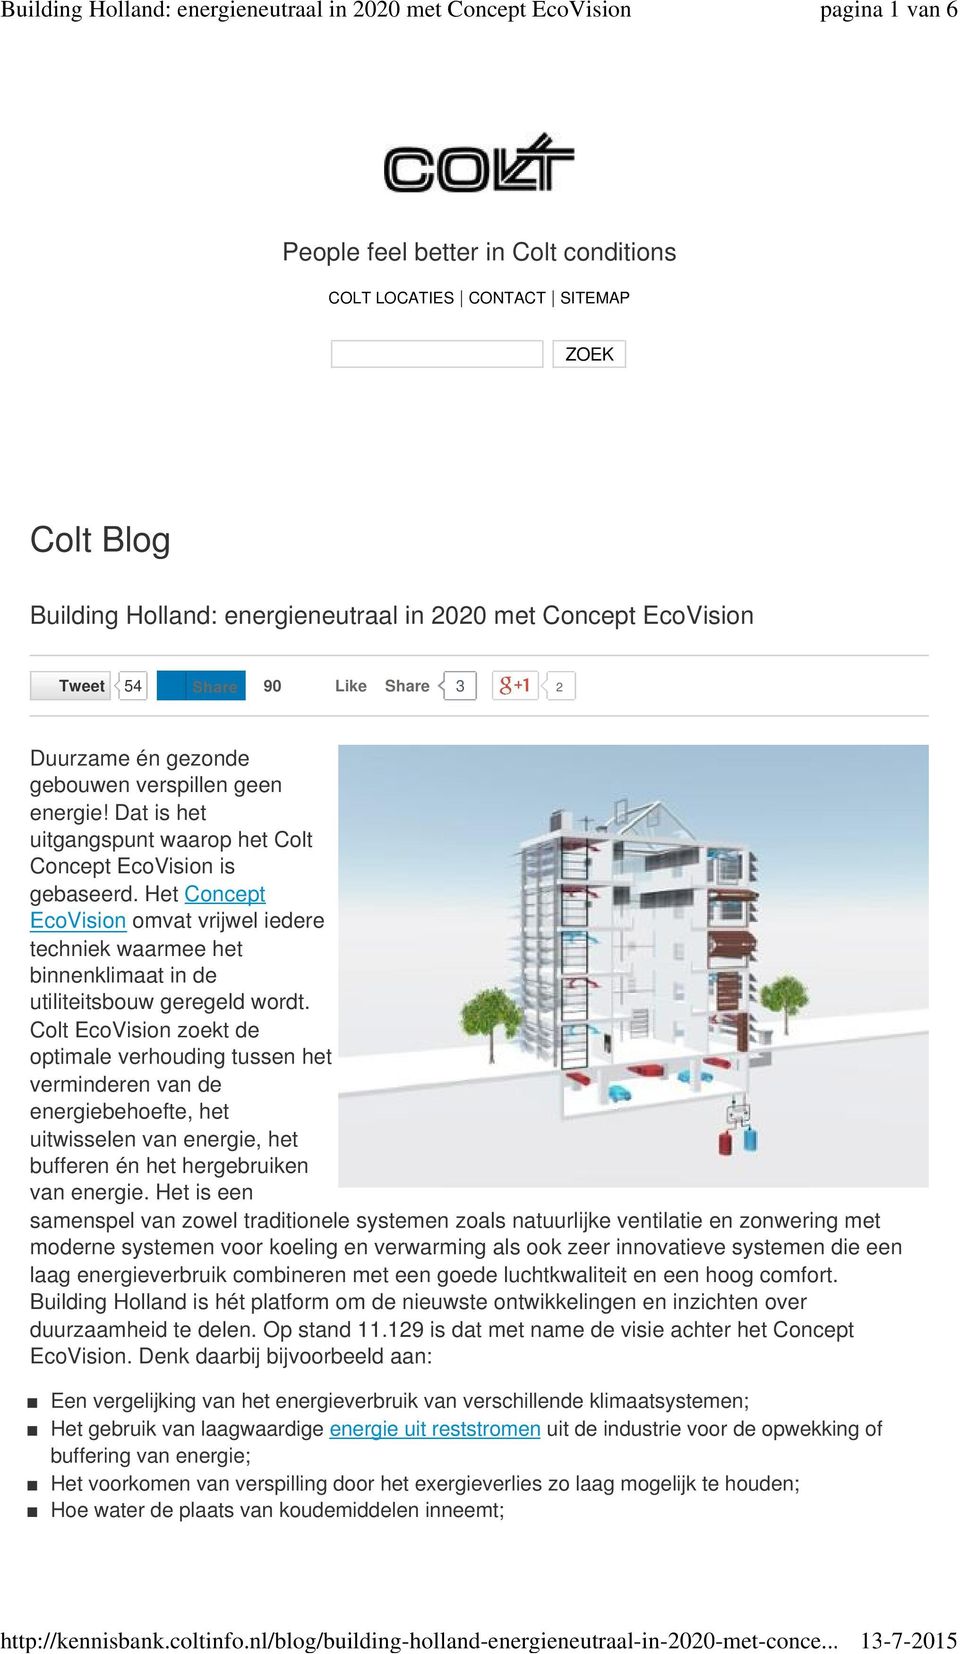 Het Concept EcoVision omvat vrijwel iedere techniek waarmee het binnenklimaat in de utiliteitsbouw geregeld wordt.